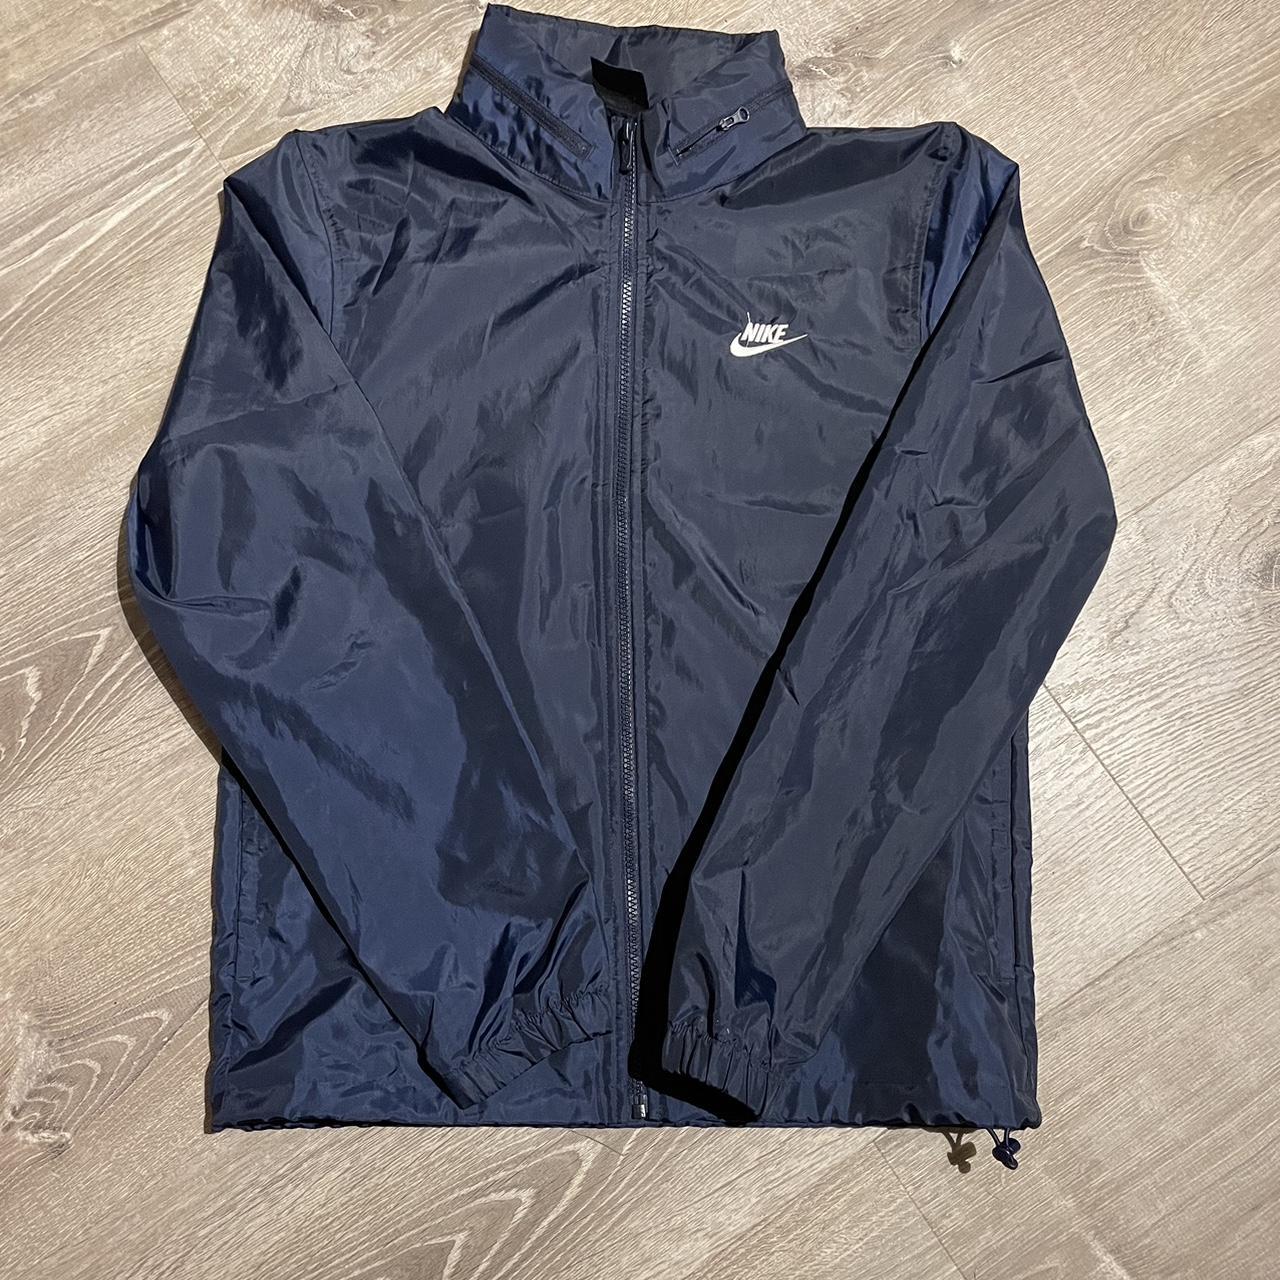 Nike Zipup jacket - Depop